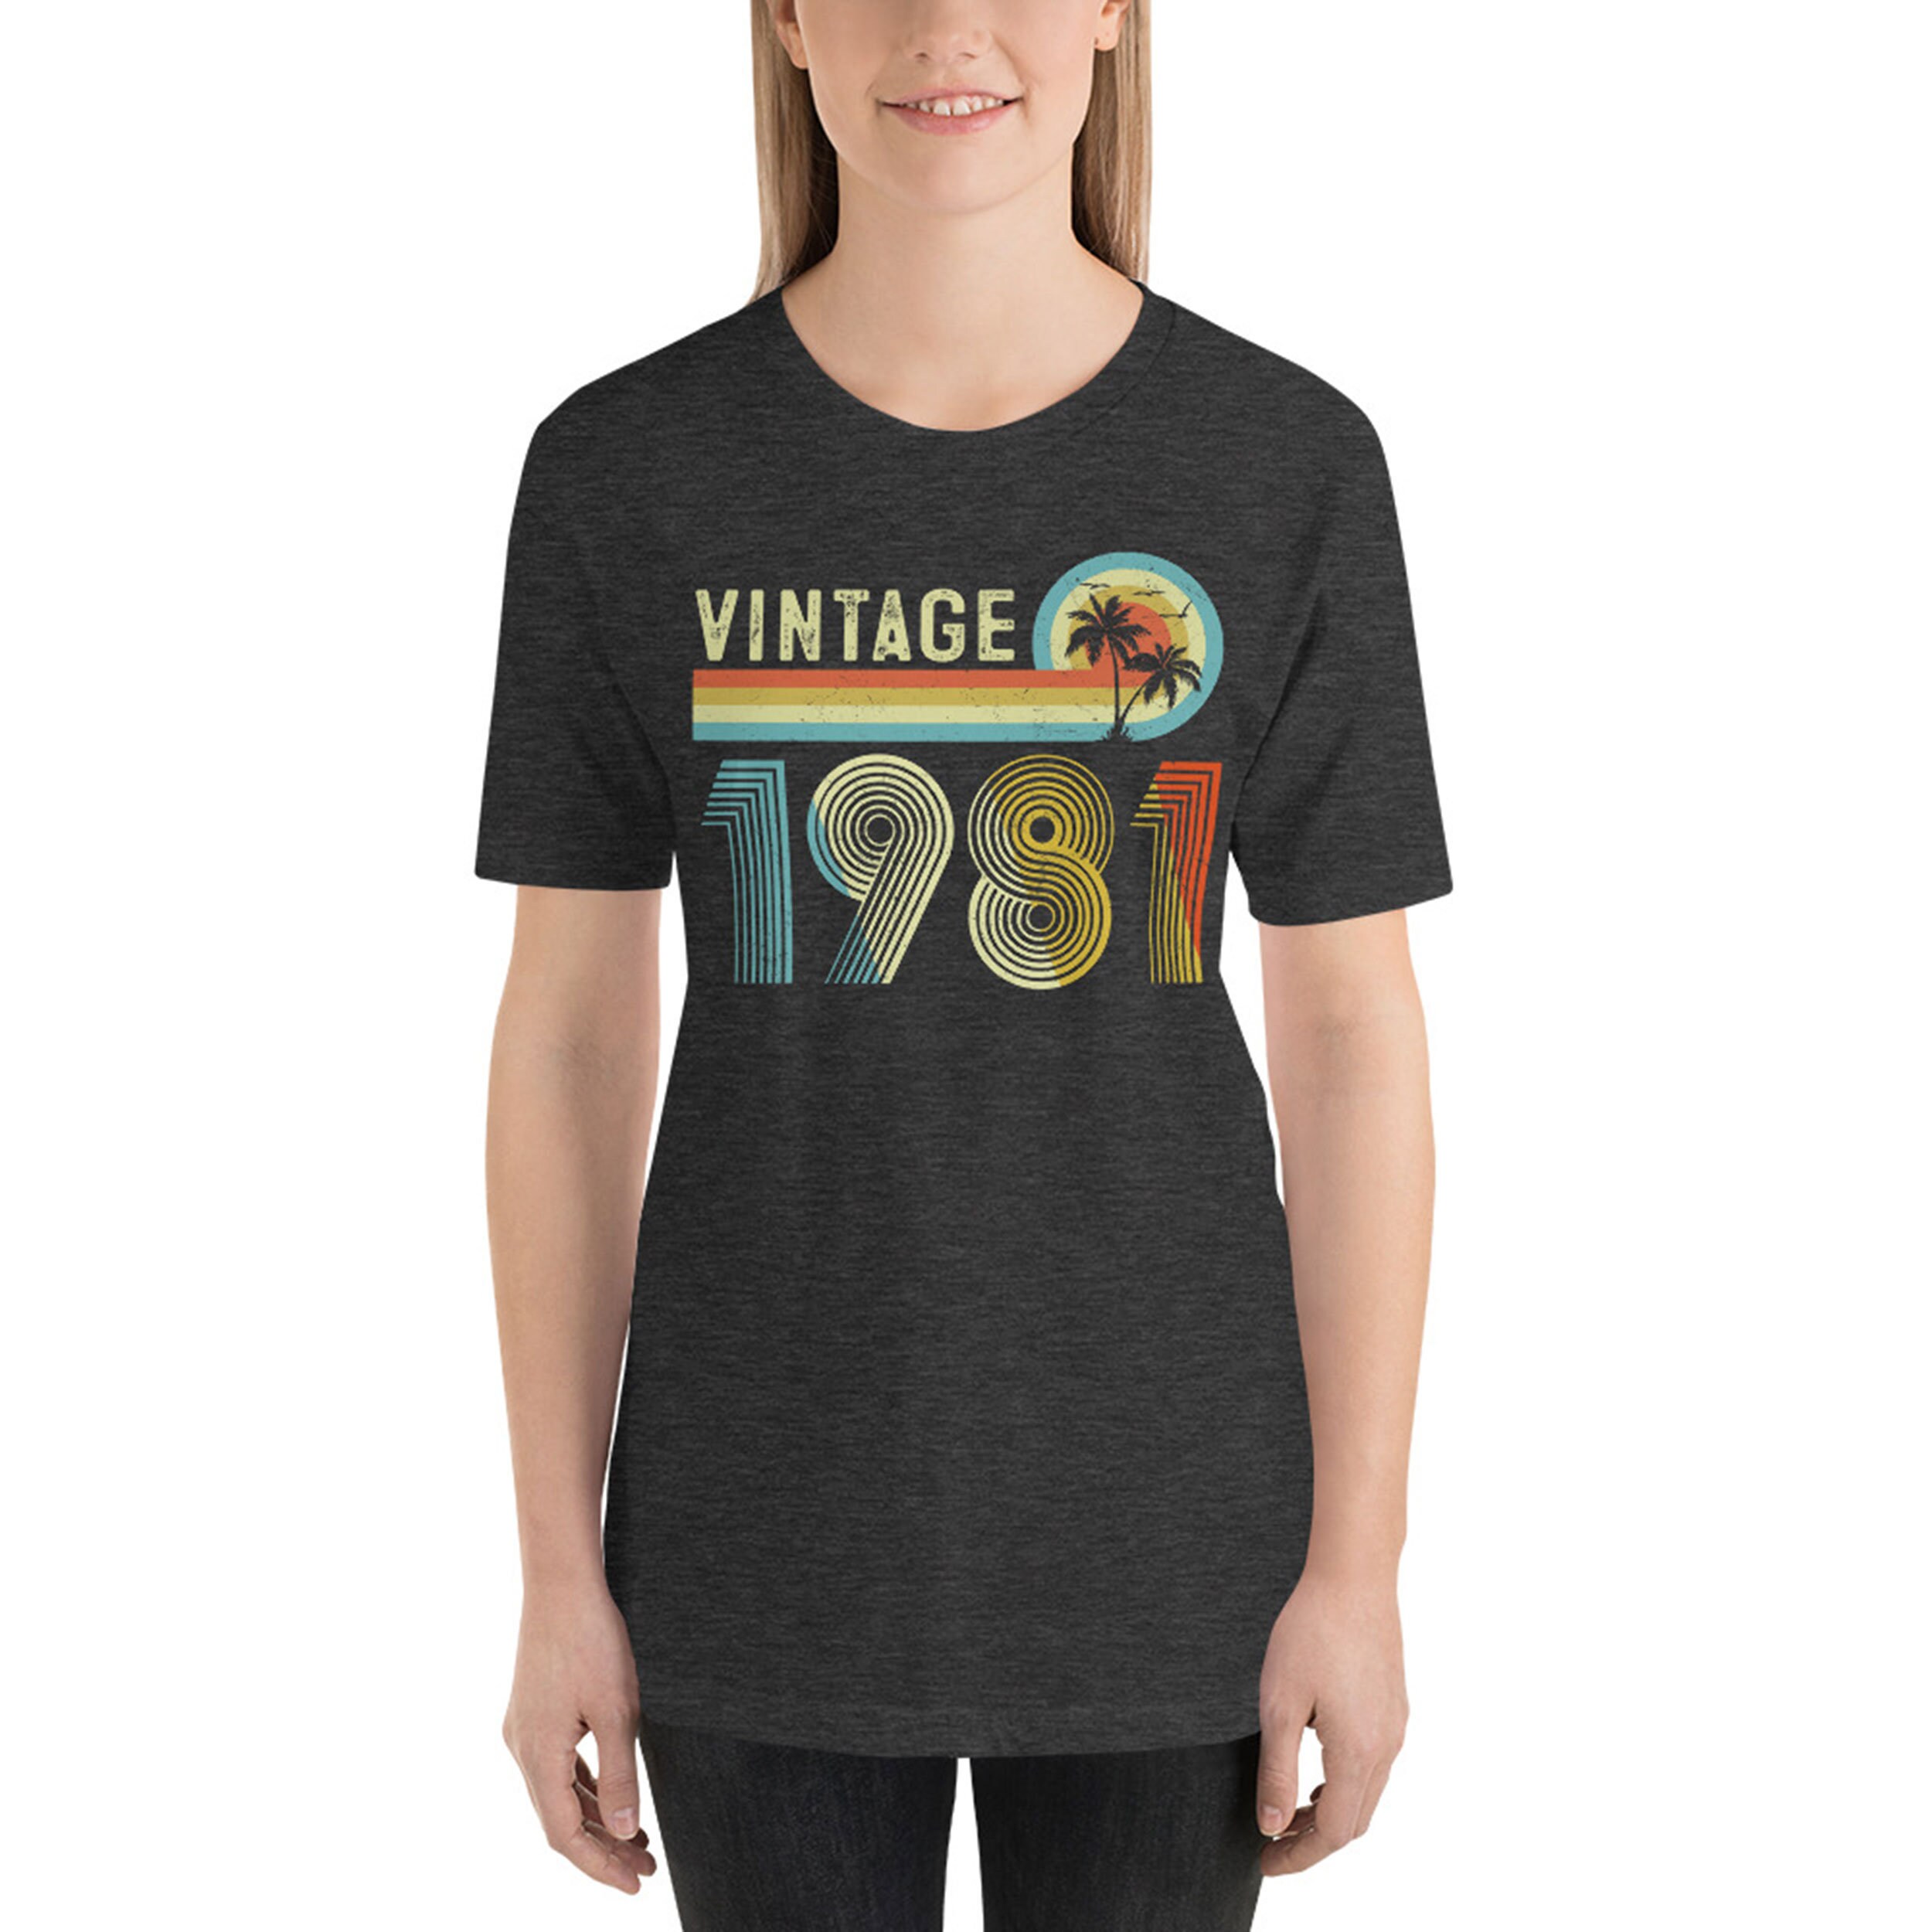 Vintage 1981 Shirt 40th Birthday Gift 1981 Vintage Birthday | Etsy